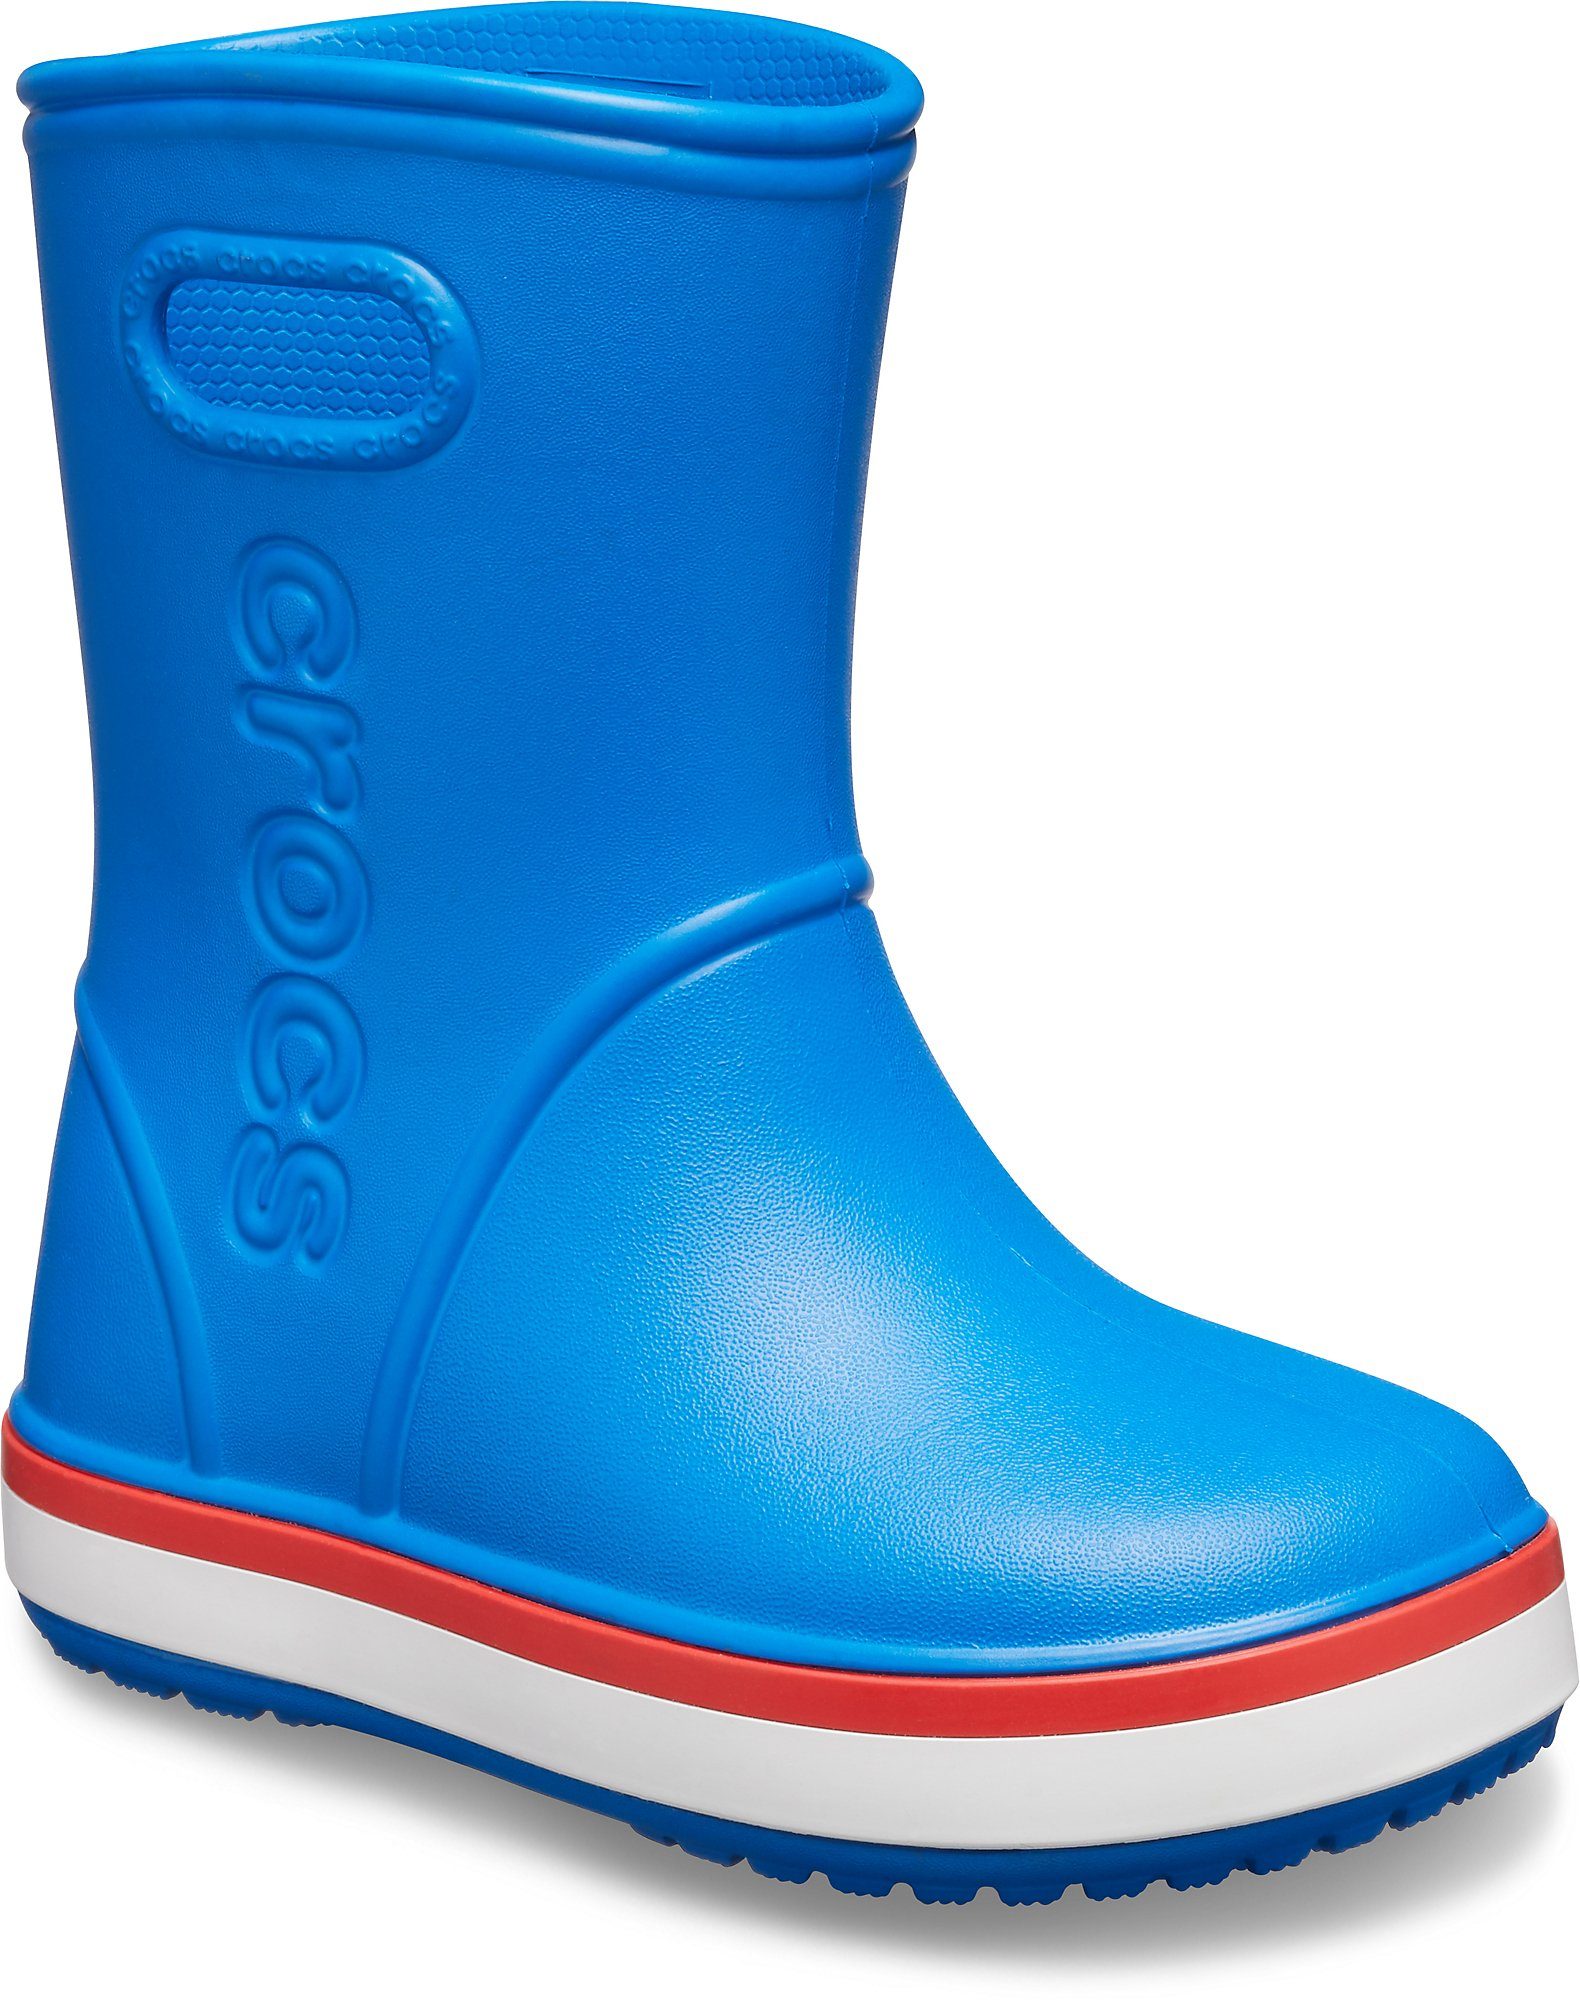 Crocs »Crocband Rain Boot Kids« Gummistiefel mit reflektierendem Logo  online kaufen | OTTO